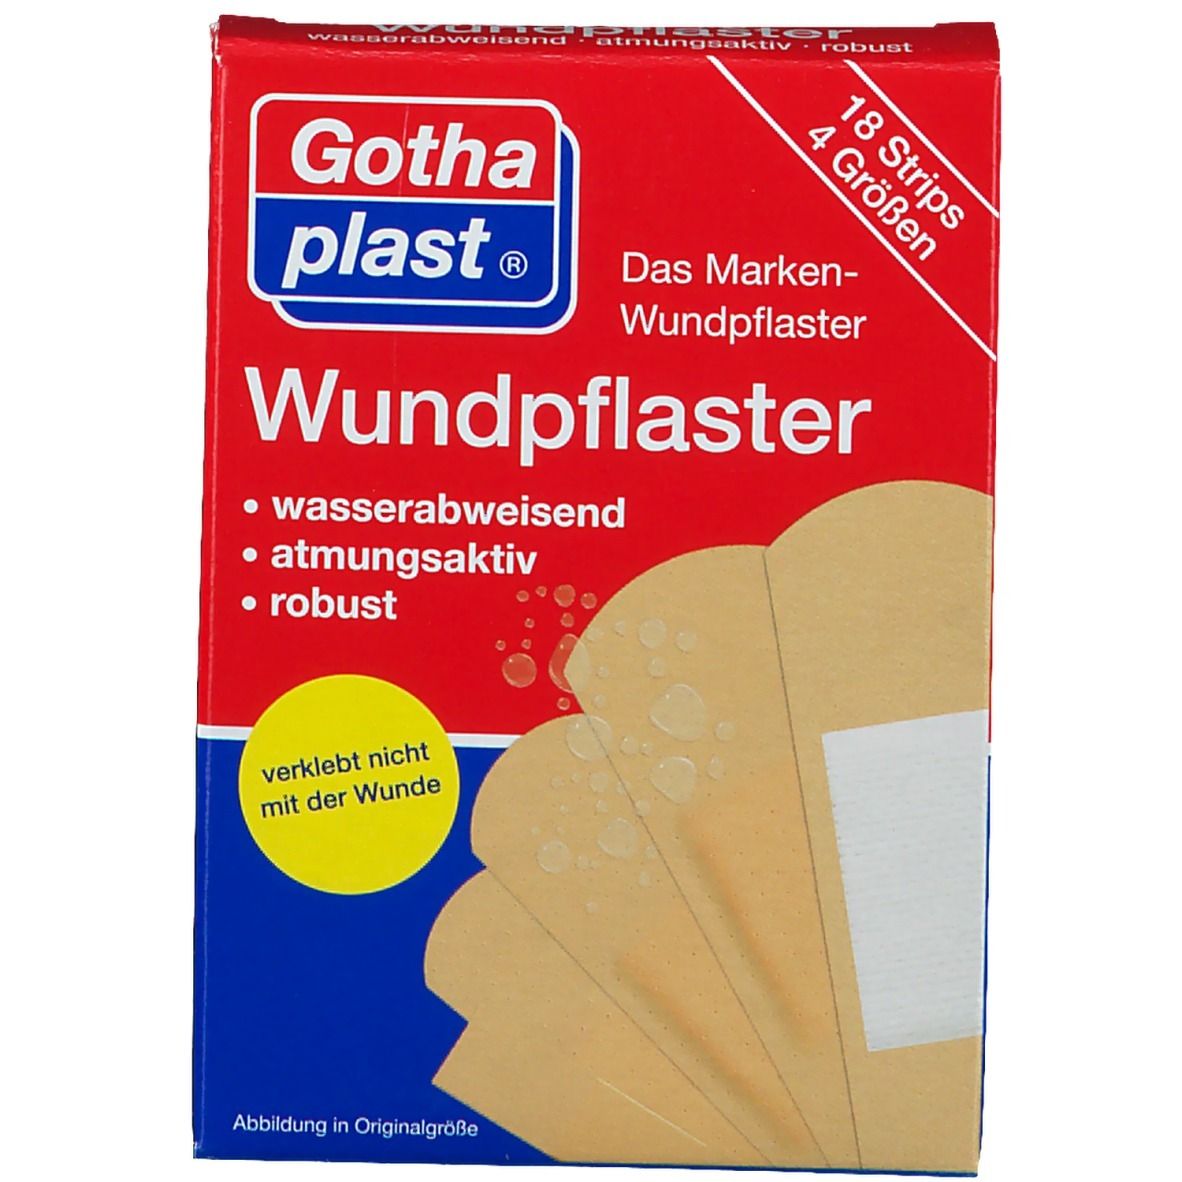 Gothaplast® Wundpflaster wasserabweisend, robust